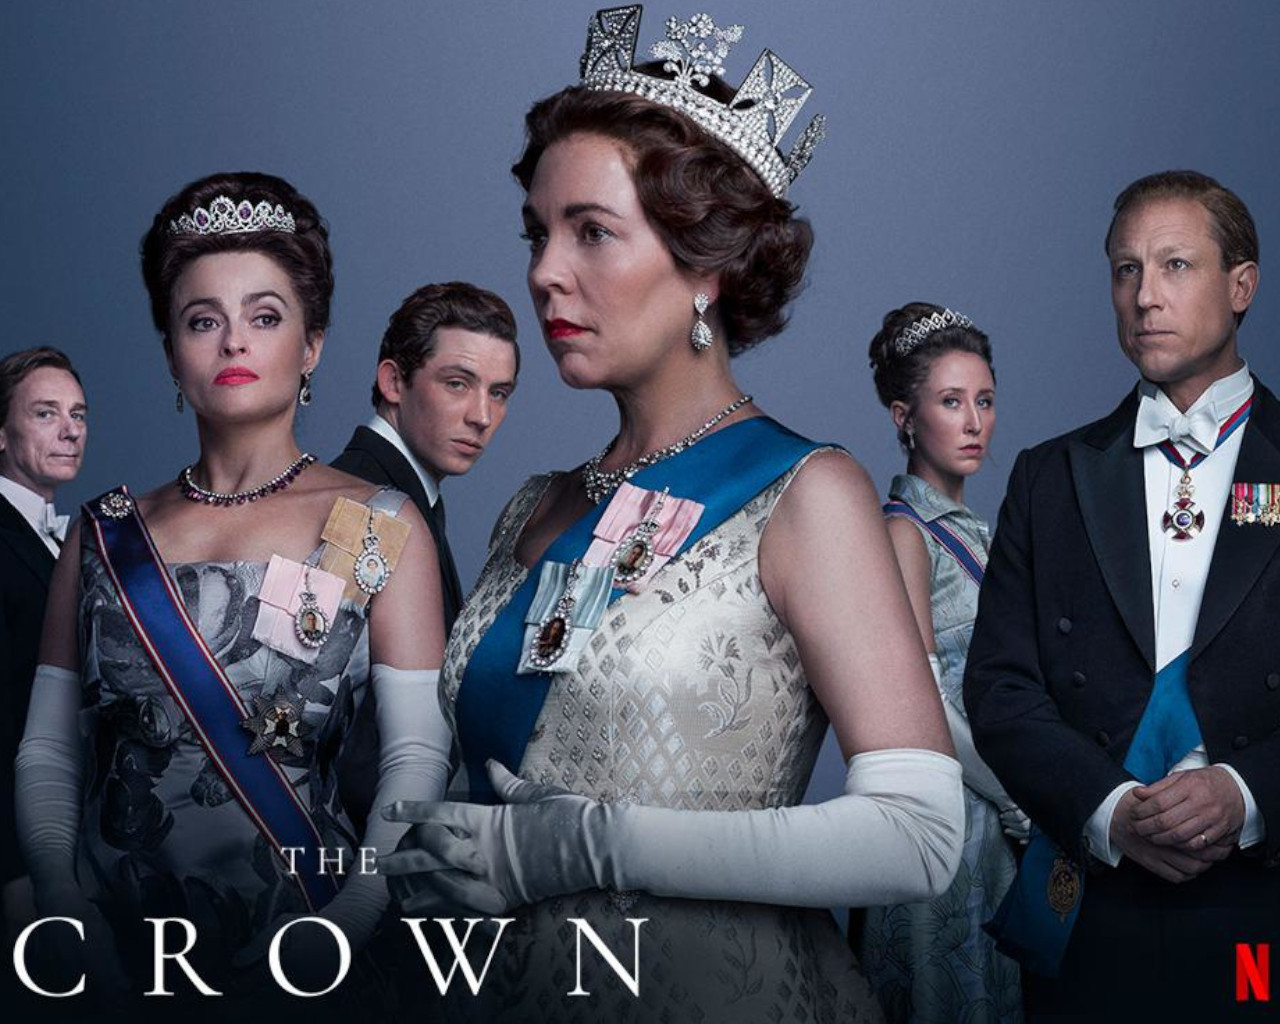 the crown,the crown season 1,the crown season 2,the crown ηθοποιοι,the crown season 4,the crown cast,the crown season 3,the crown season 5